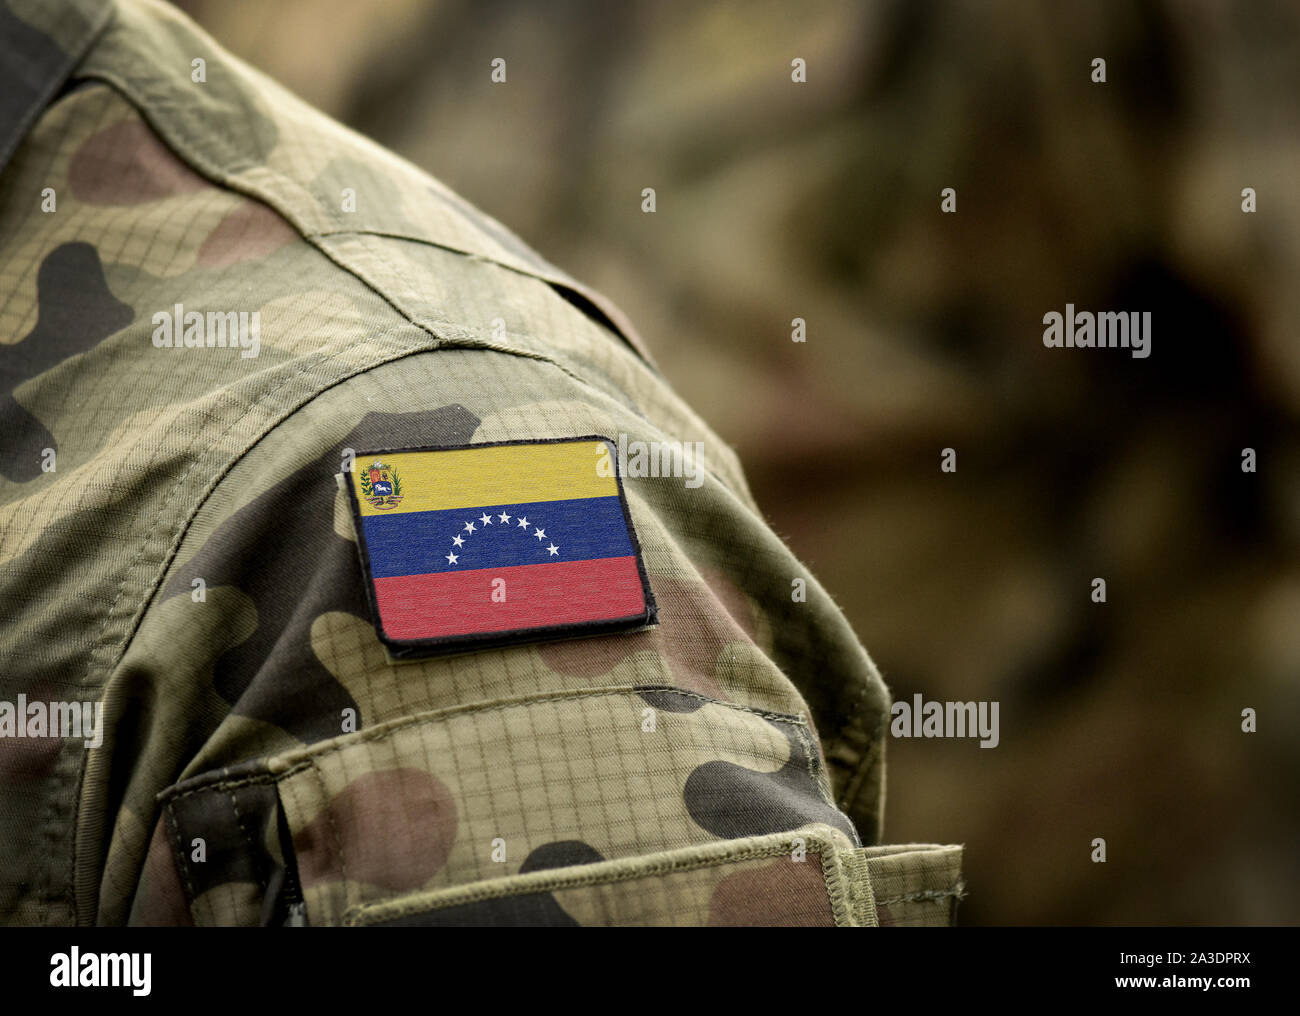 La bandera de Venezuela en uniforme militar (collage). Foto de stock